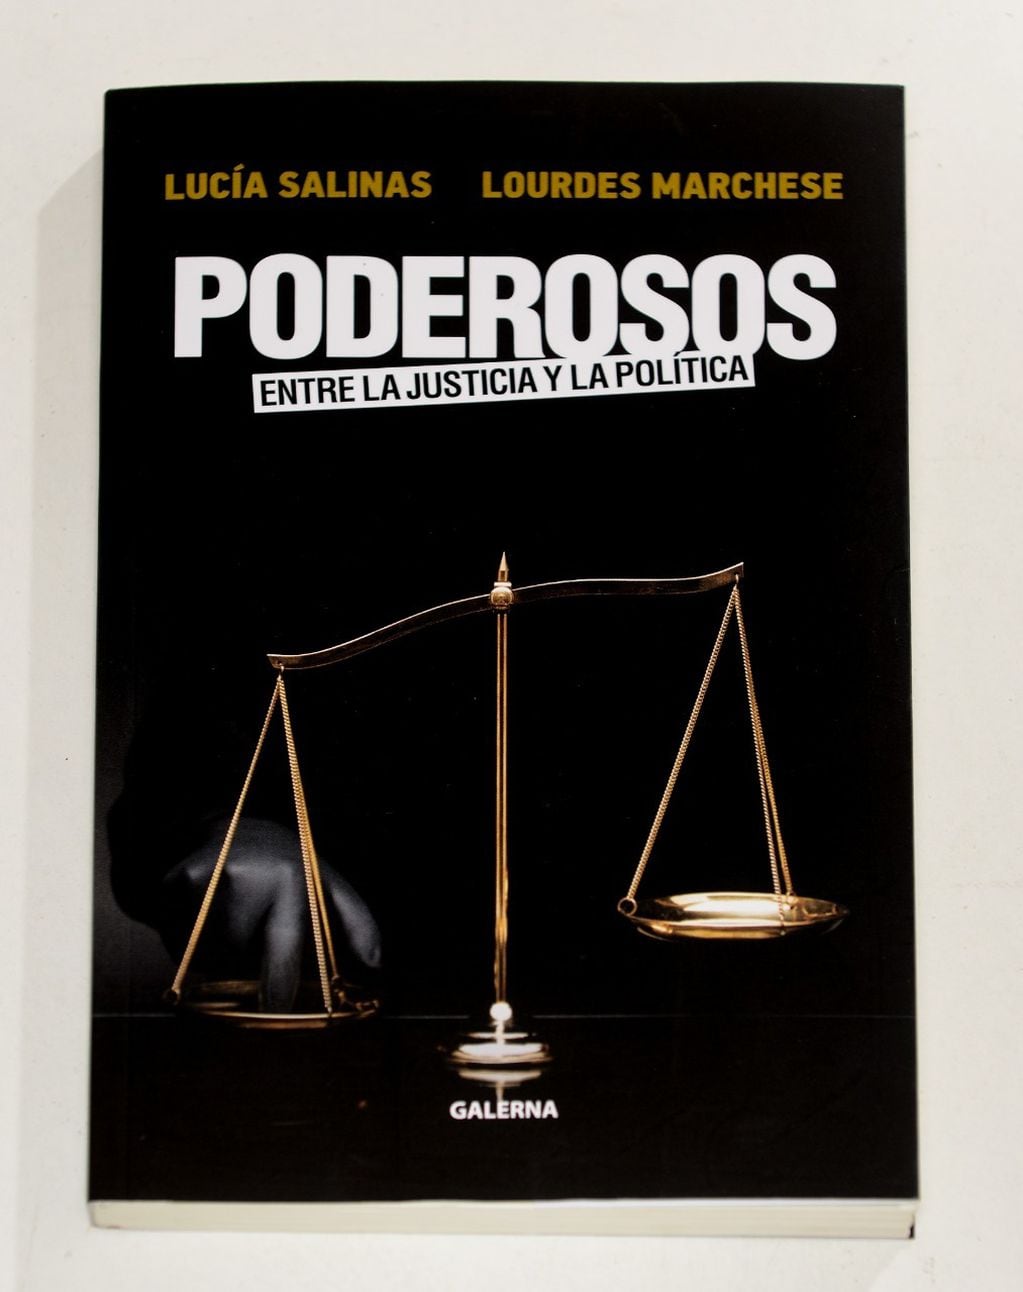 Las periodistas Lucia Salinas y Lourdes Marchese presentan su libro "Poderosos".